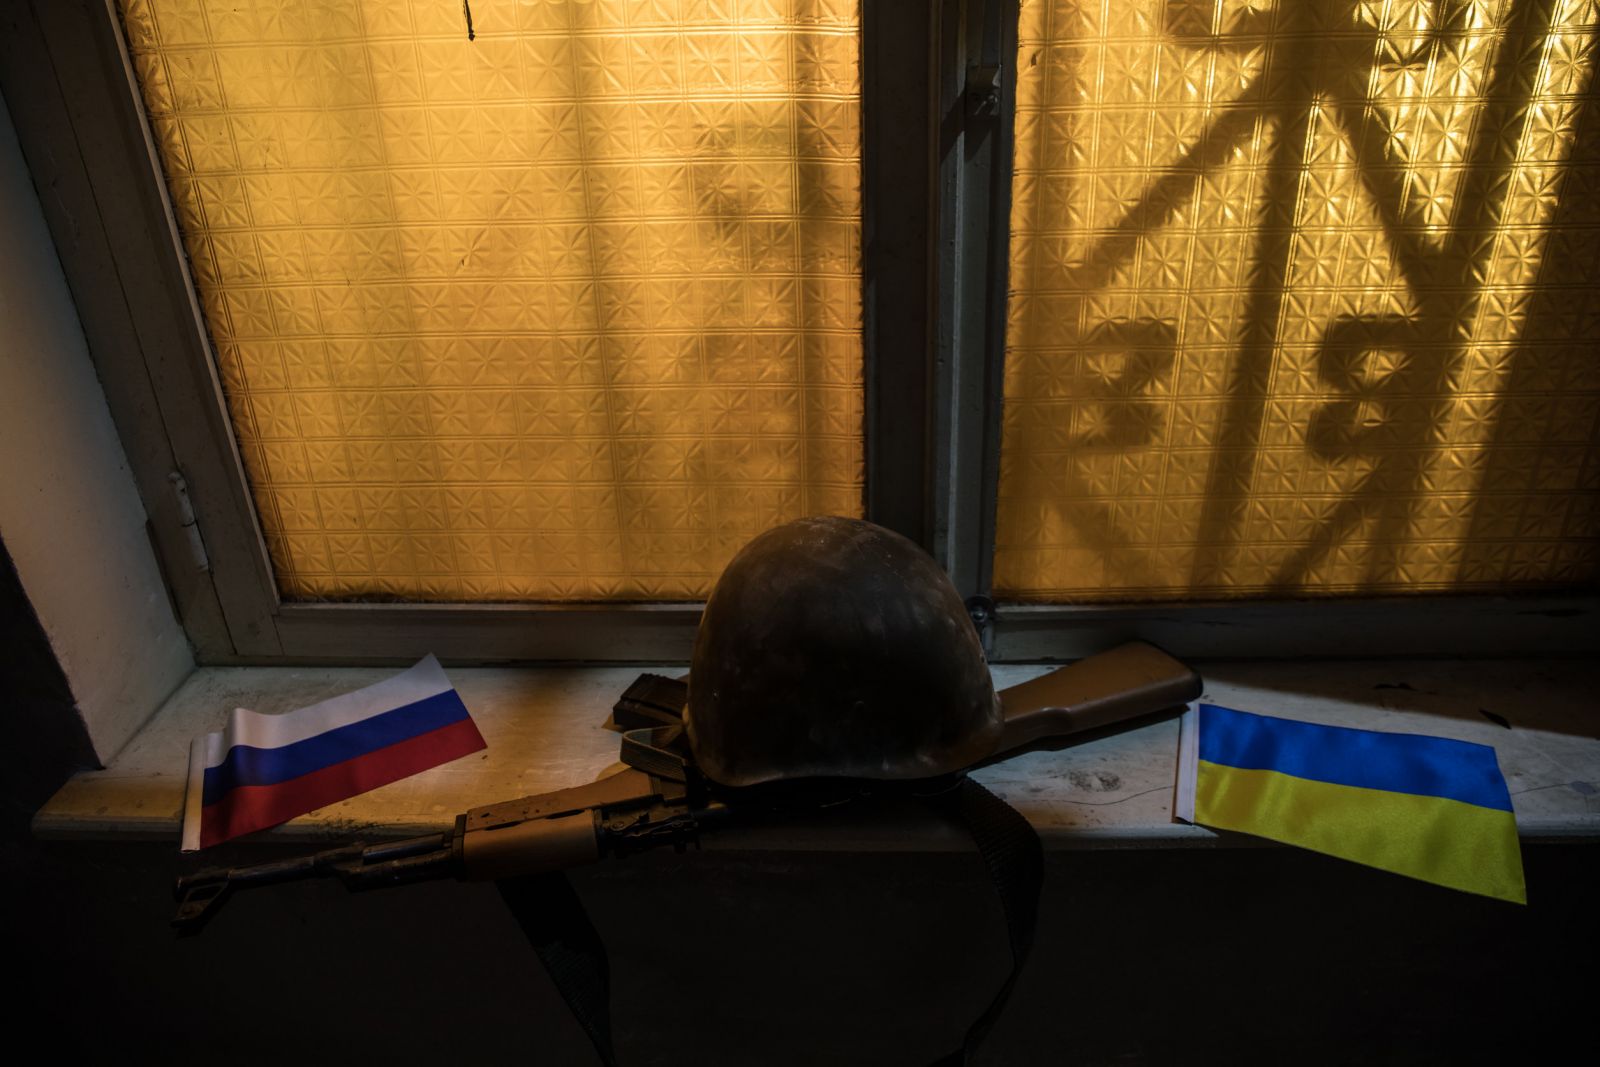 ablak orosz ukrán zászló sisak puska